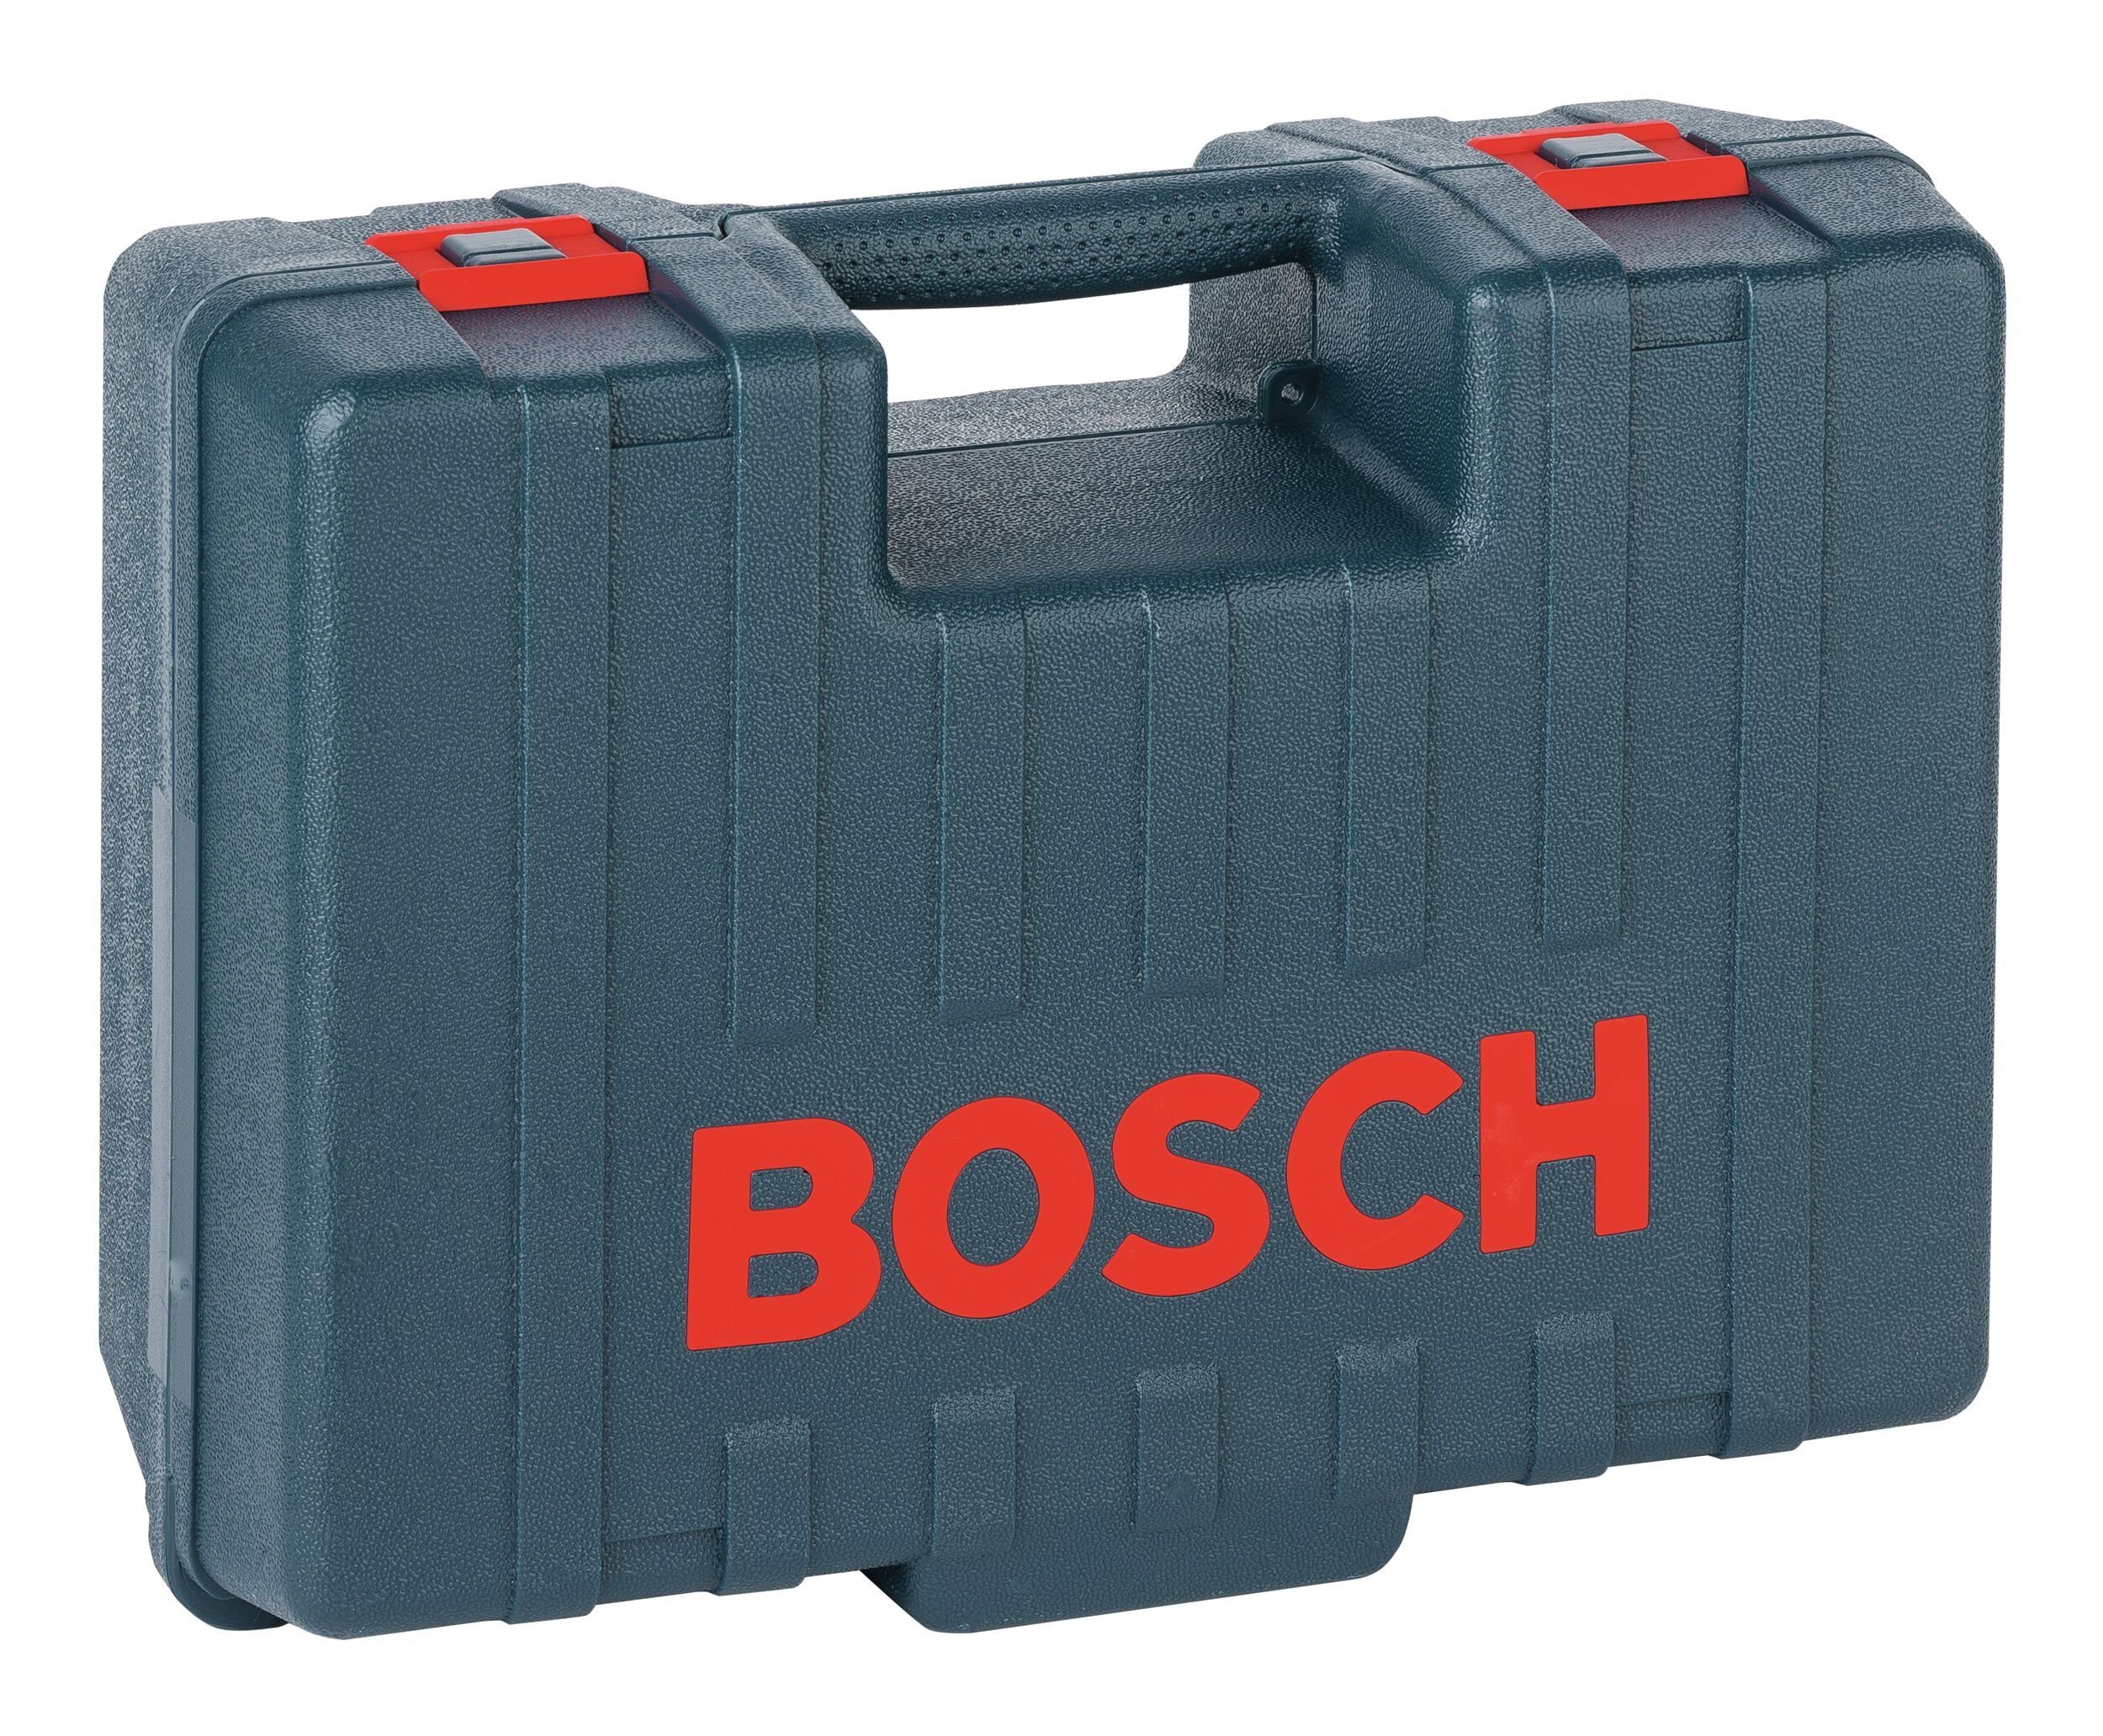 Bosch Home für & Werkzeugkoffer, Garden mm 360 x (blau) 220 480 - Kunststoffkoffer x Hobel